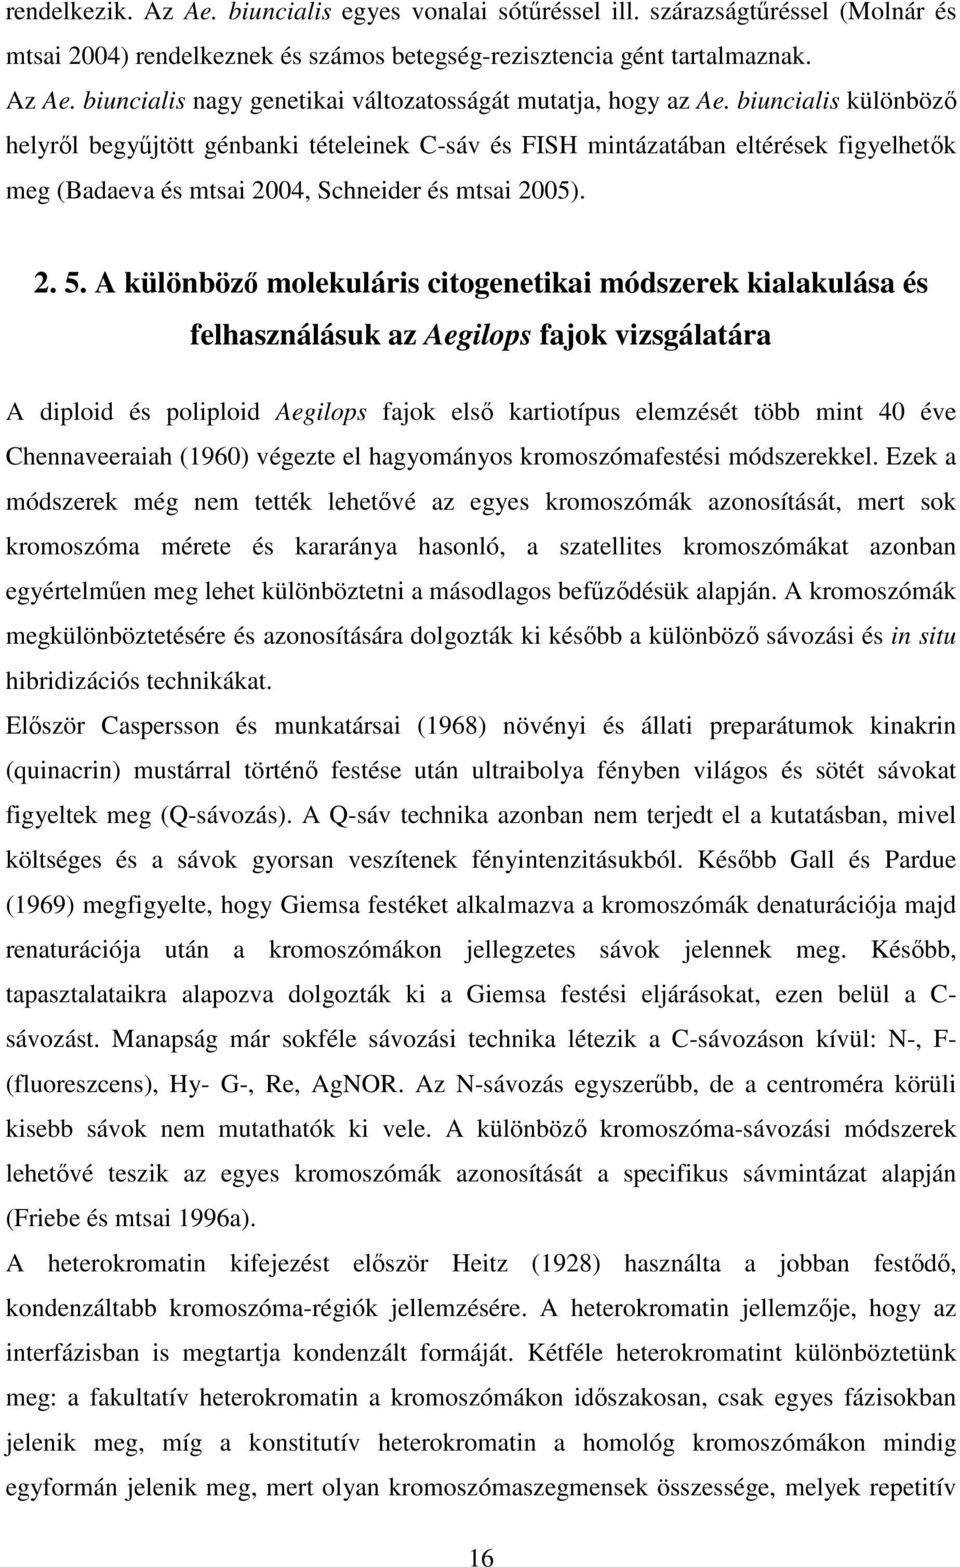 A különböz molekuláris citogenetikai módszerek kialakulása és felhasználásuk az Aegilops fajok vizsgálatára A diploid és poliploid Aegilops fajok els kartiotípus elemzését több mint 40 éve